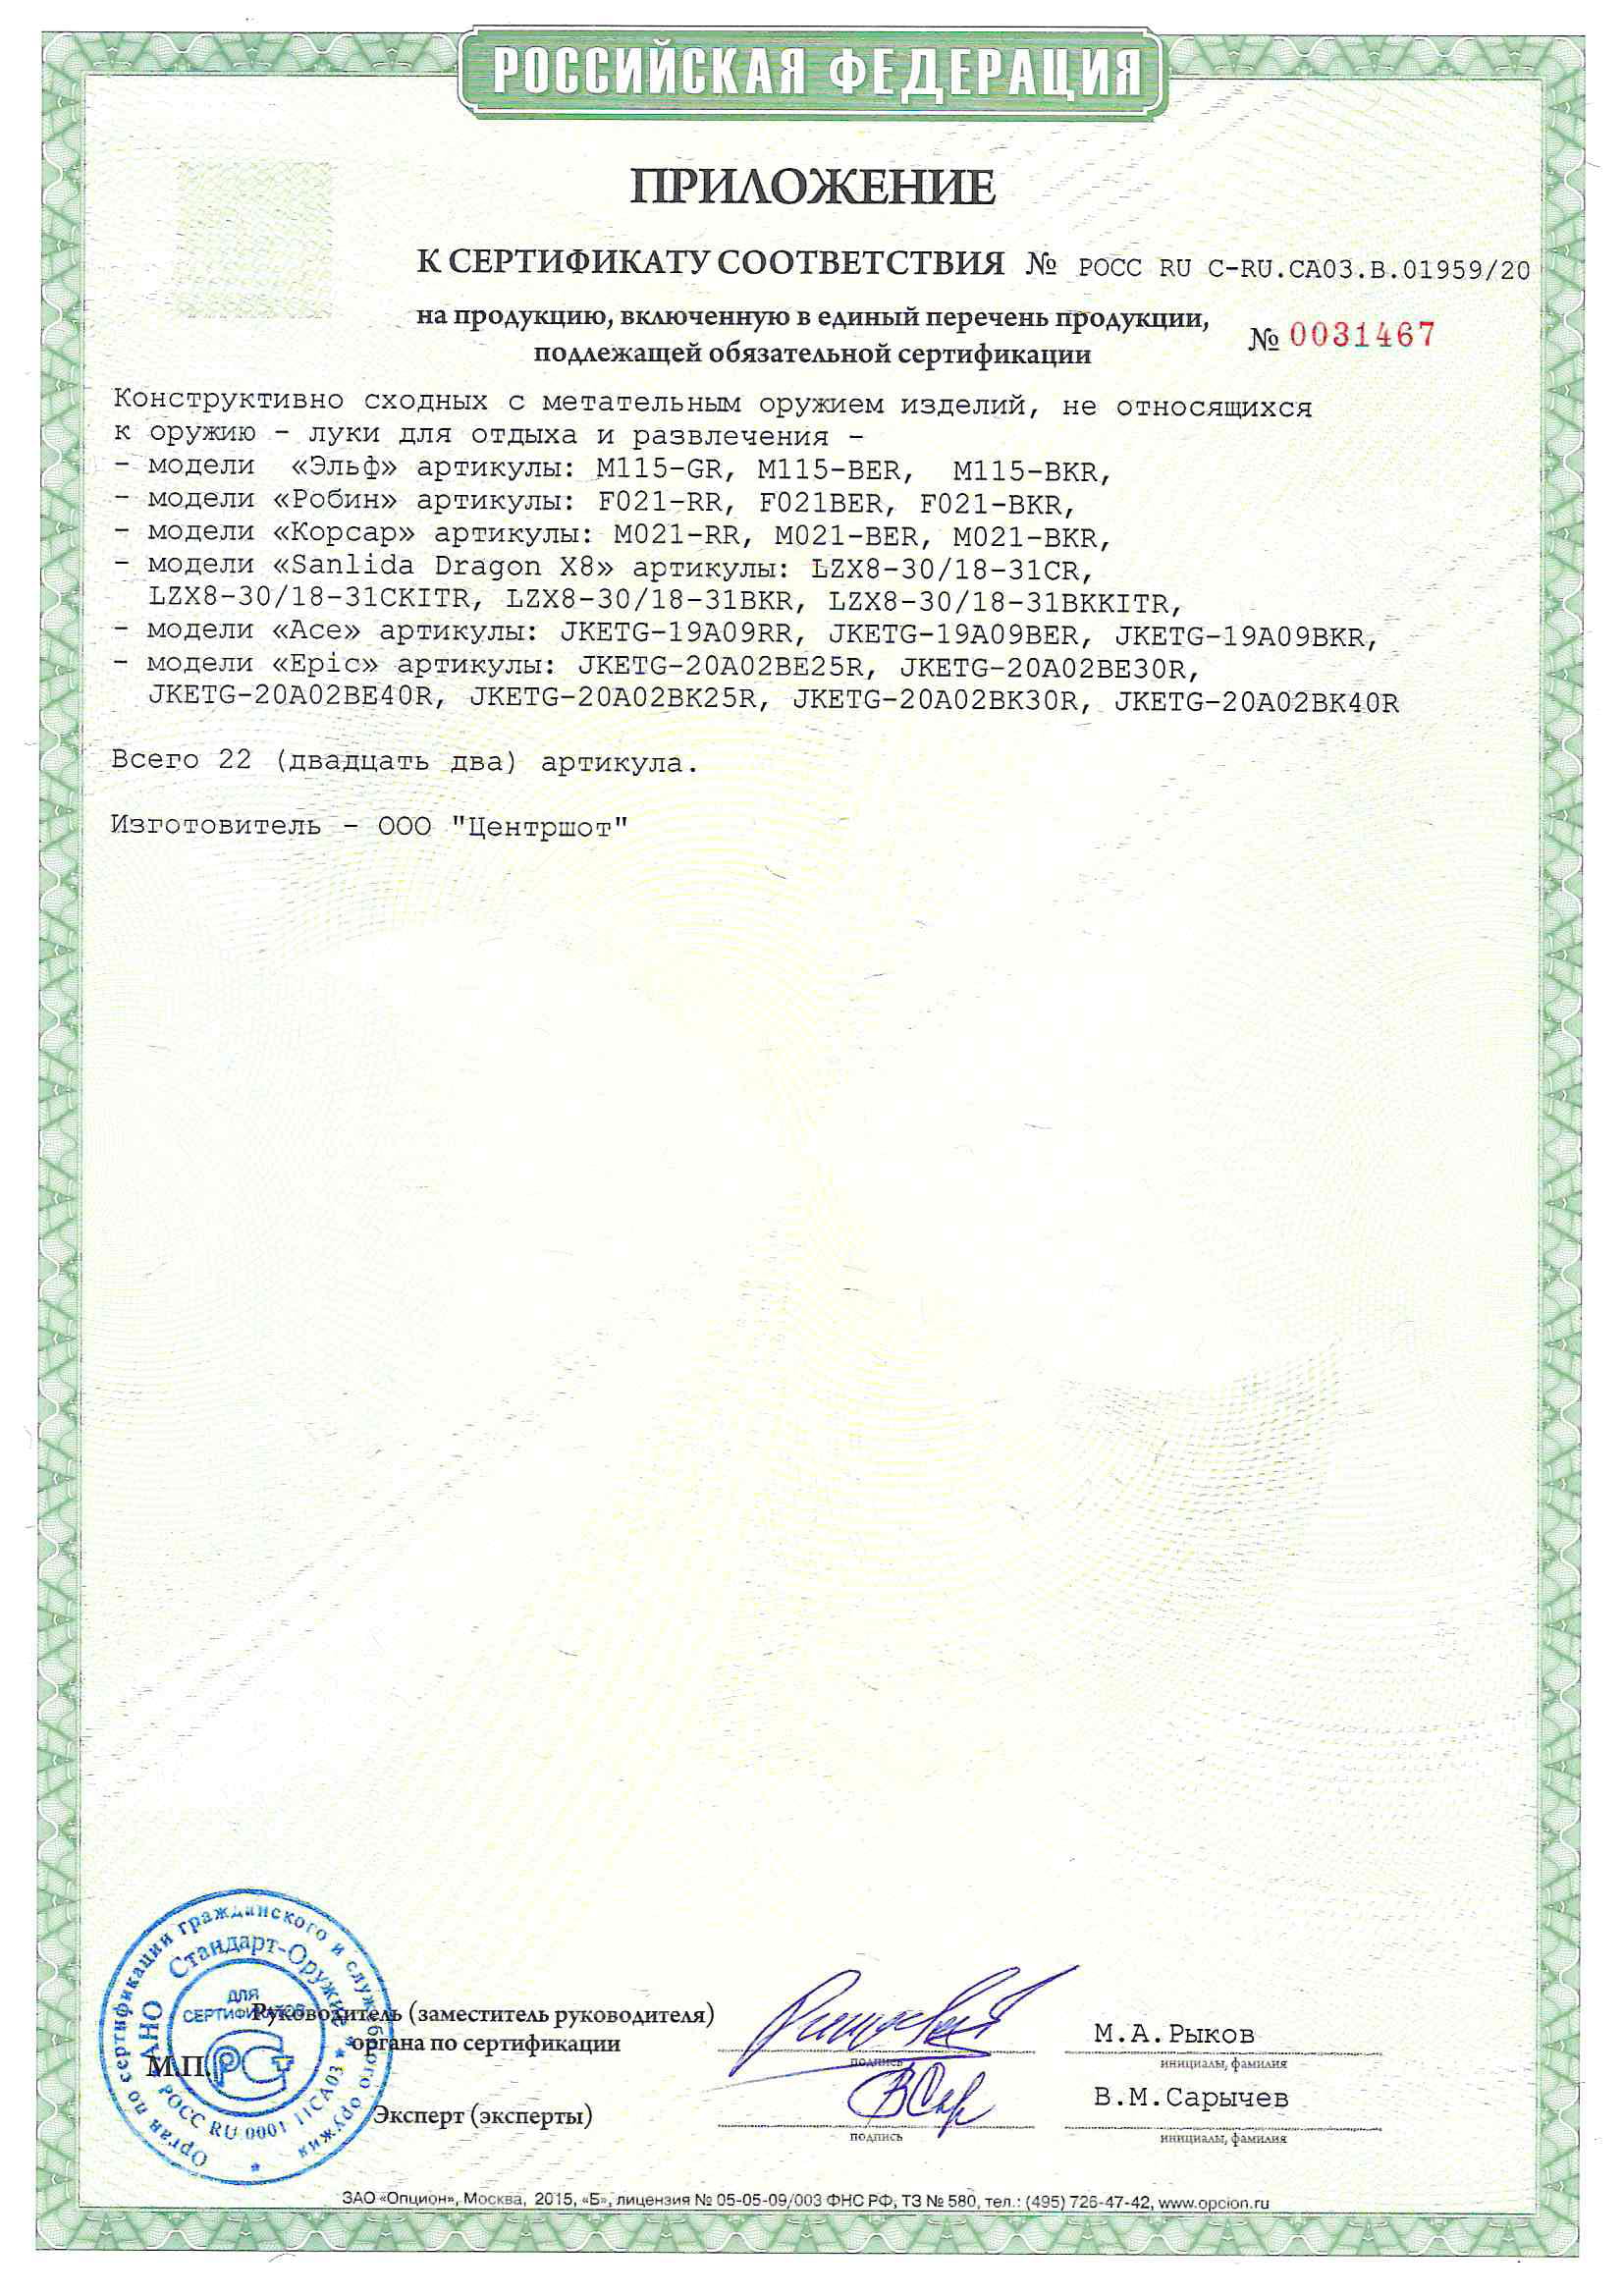 *Сертификат* Лук детский блочный Centershot Корсар черный (с комплектом) Сертификат соответствия №POCC RU C-RU.CA03.B.01959/20 приложение Корсар